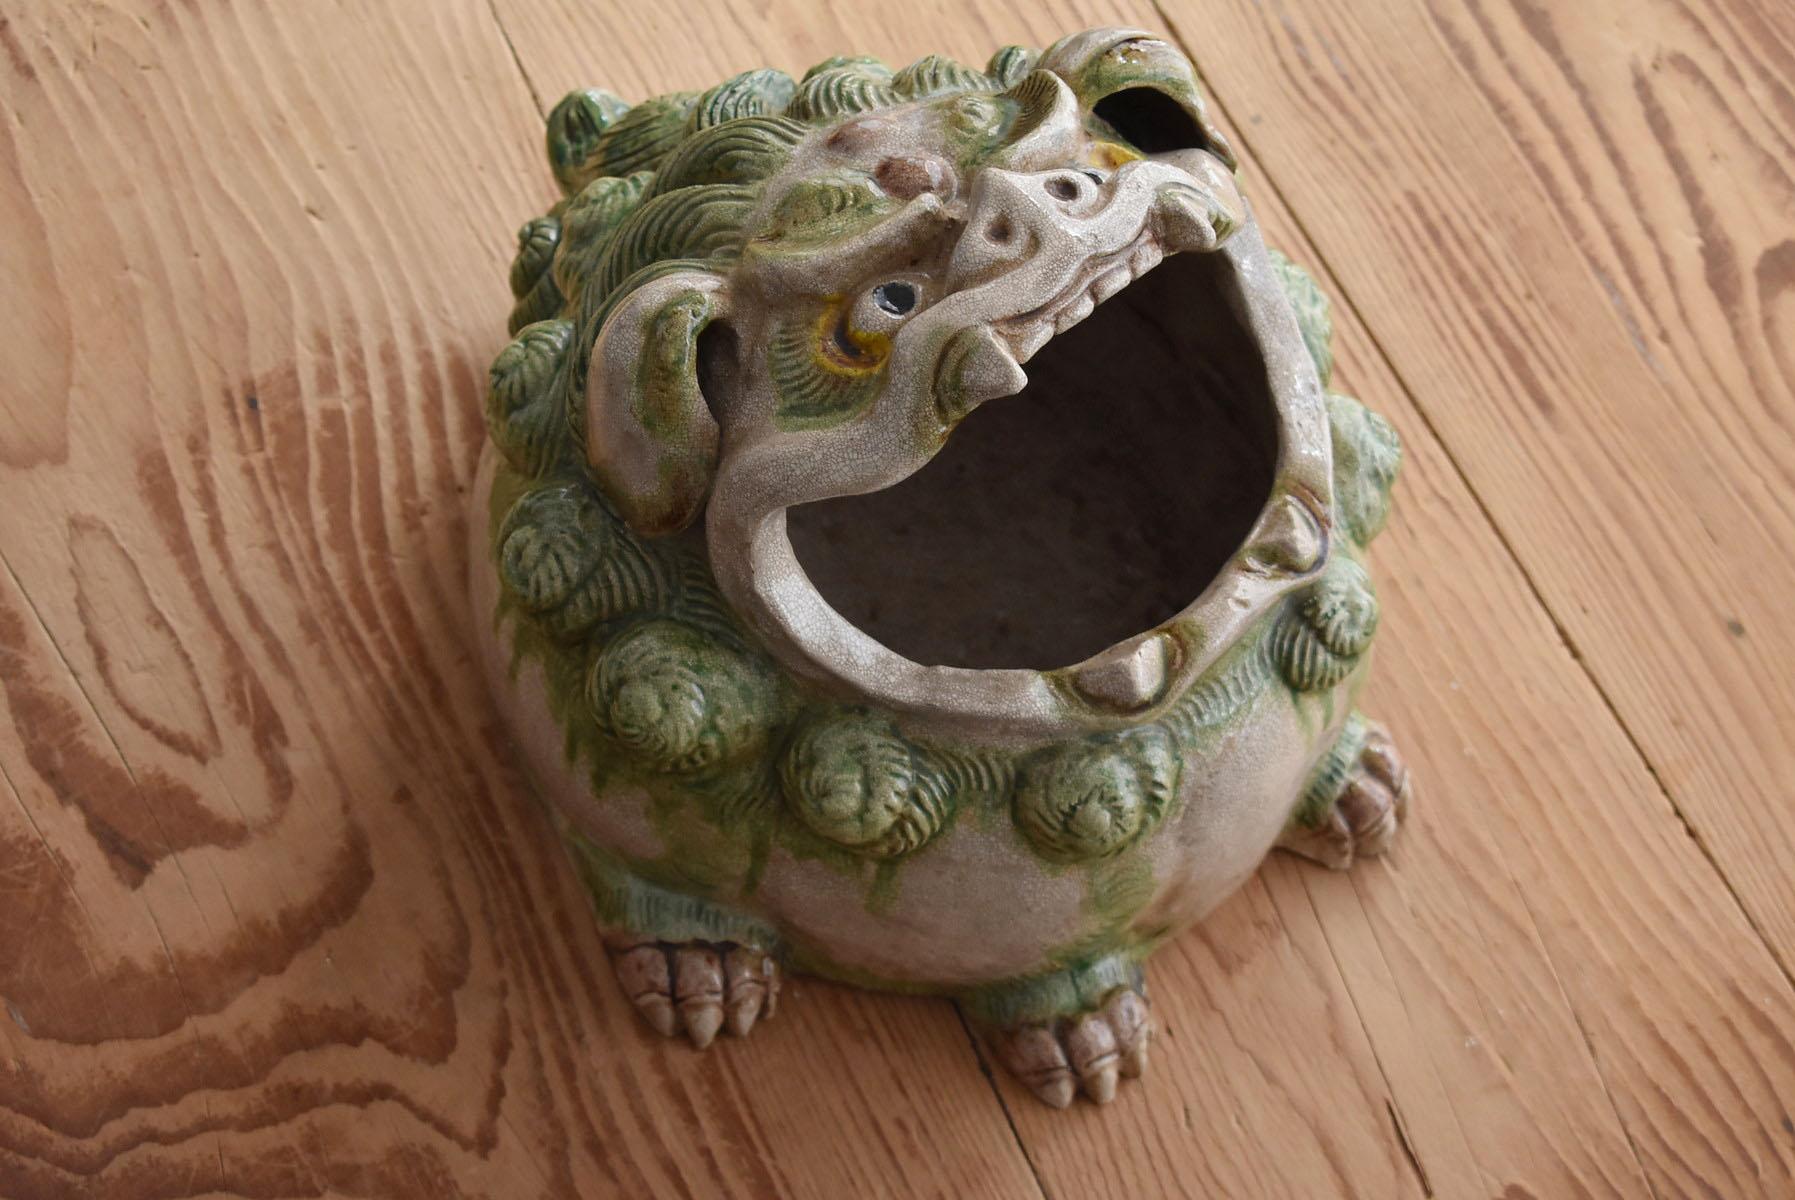 Japanese Antique Pottery Lion Figurine / Hand Roasting / Large Incense Burner 14